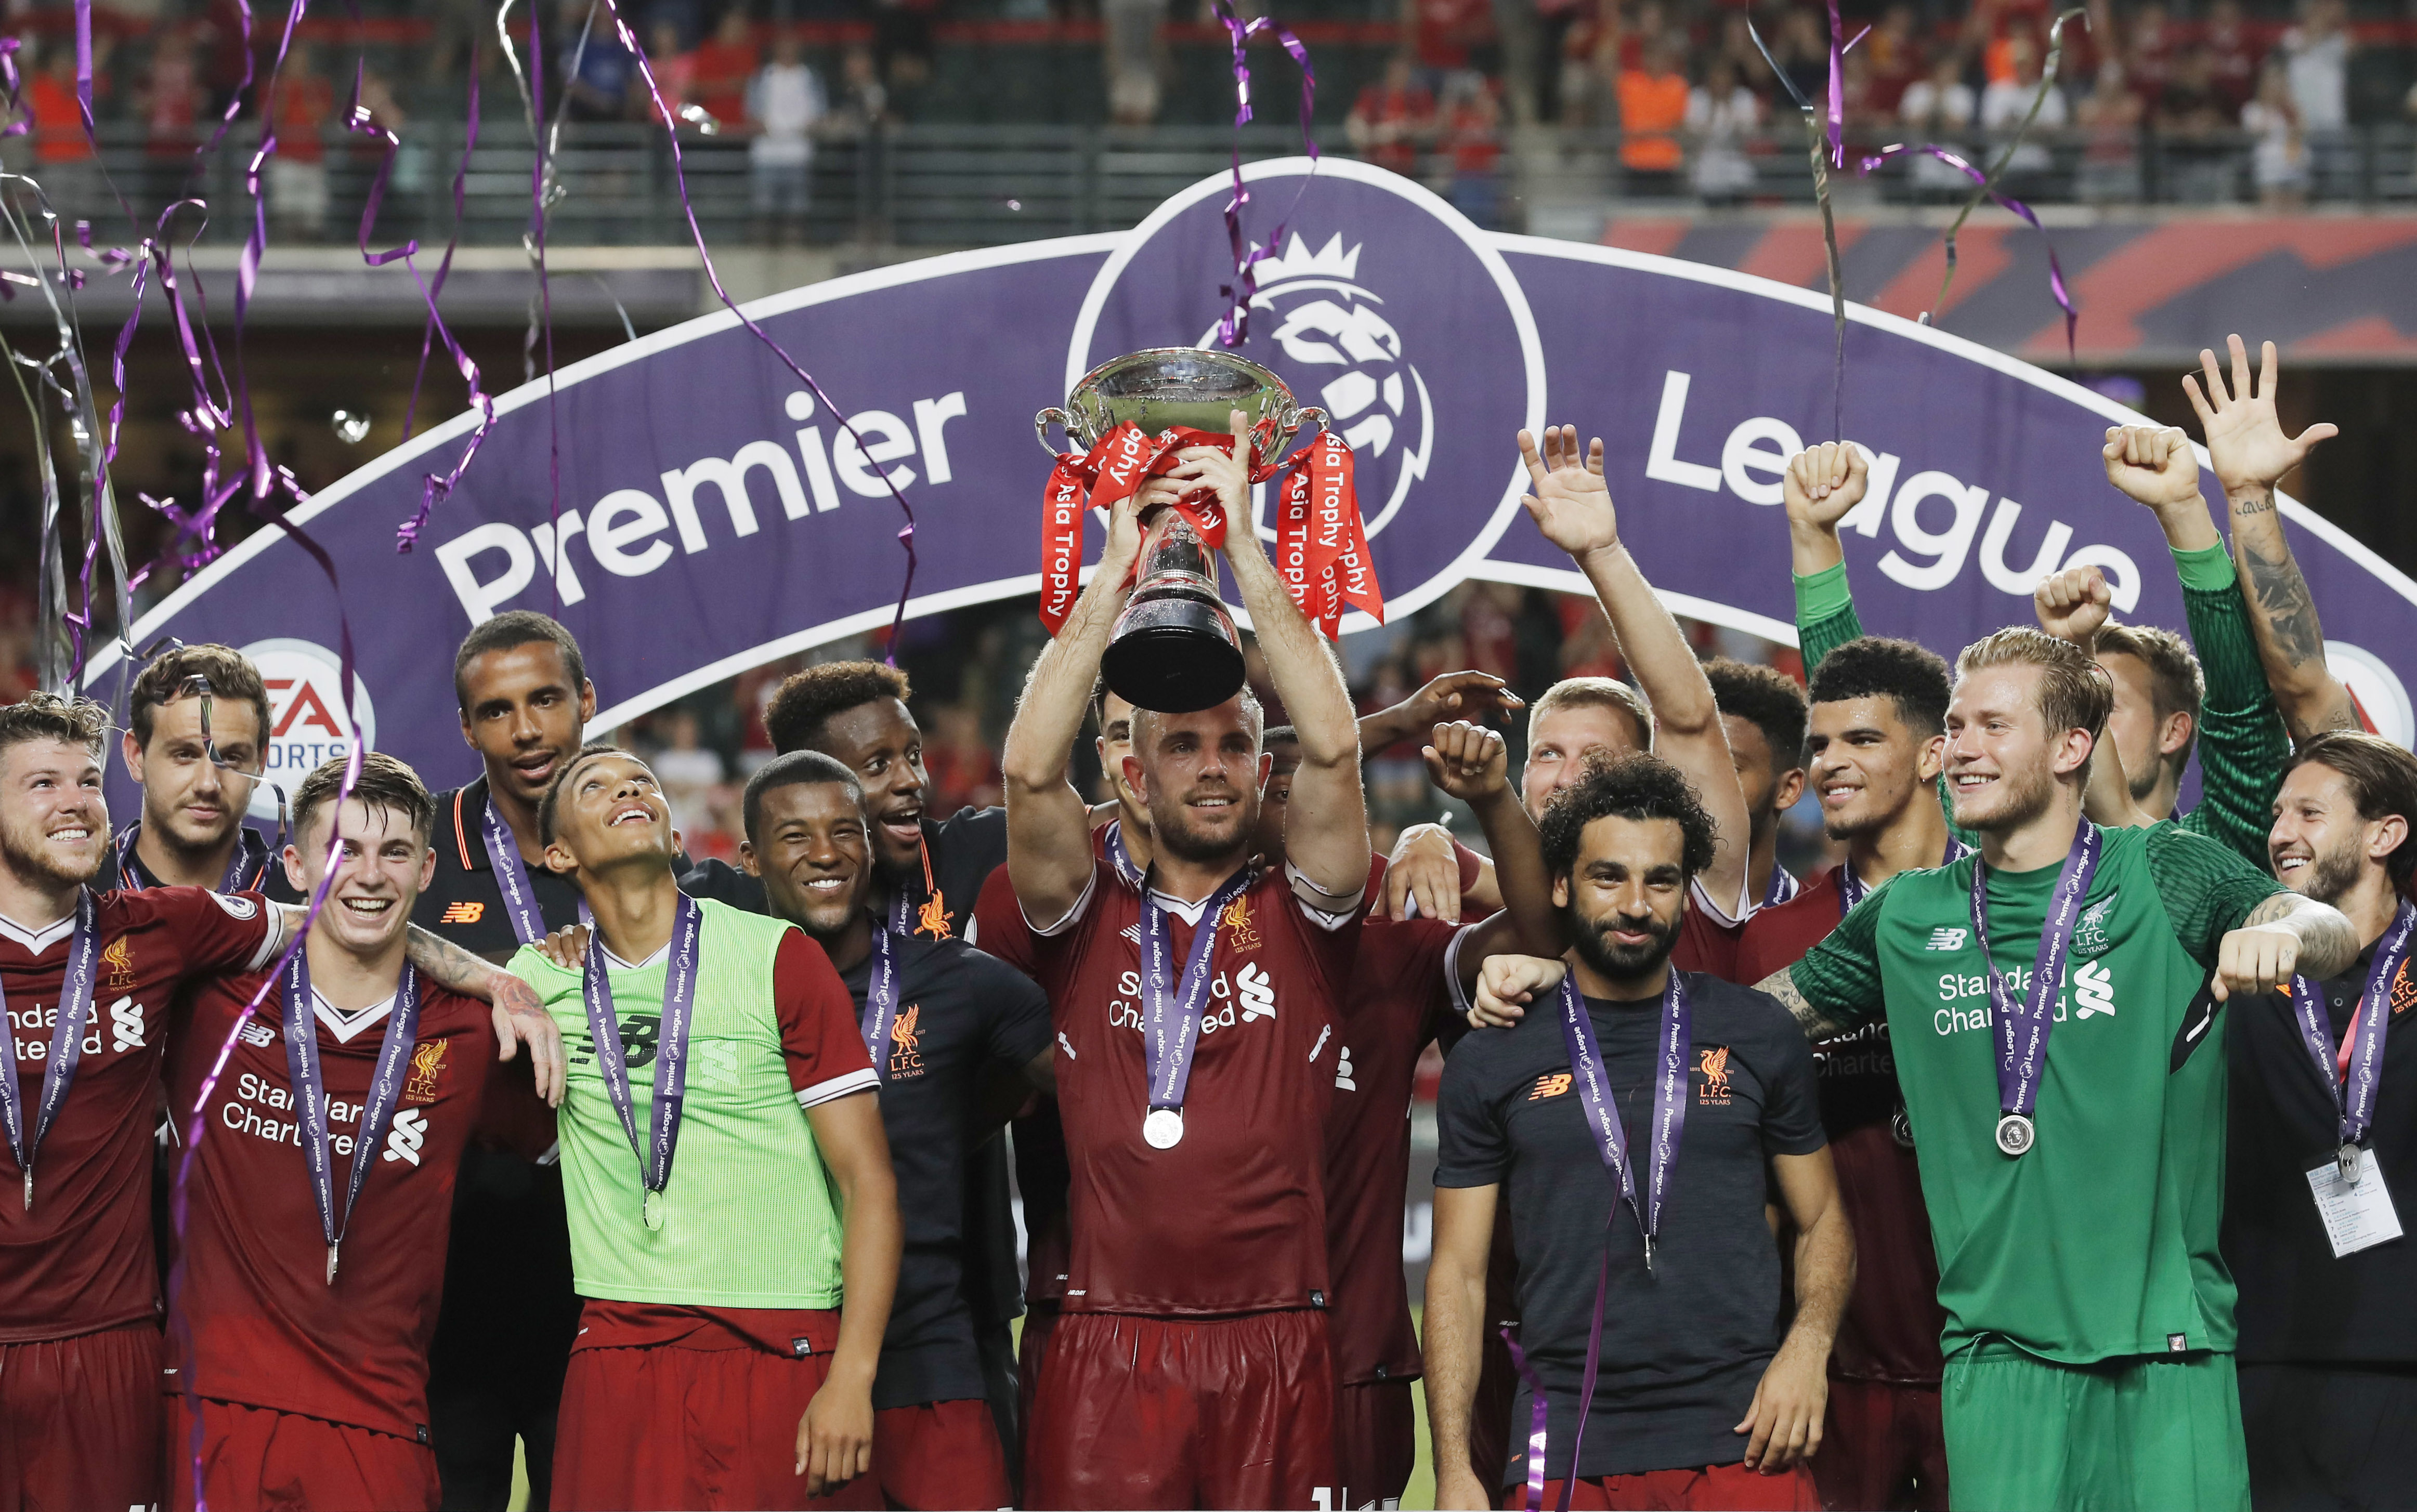 ”Ливърпул” спечели Азиатската купа на Висшата лига след успех с 2:1 над ”Лестър”